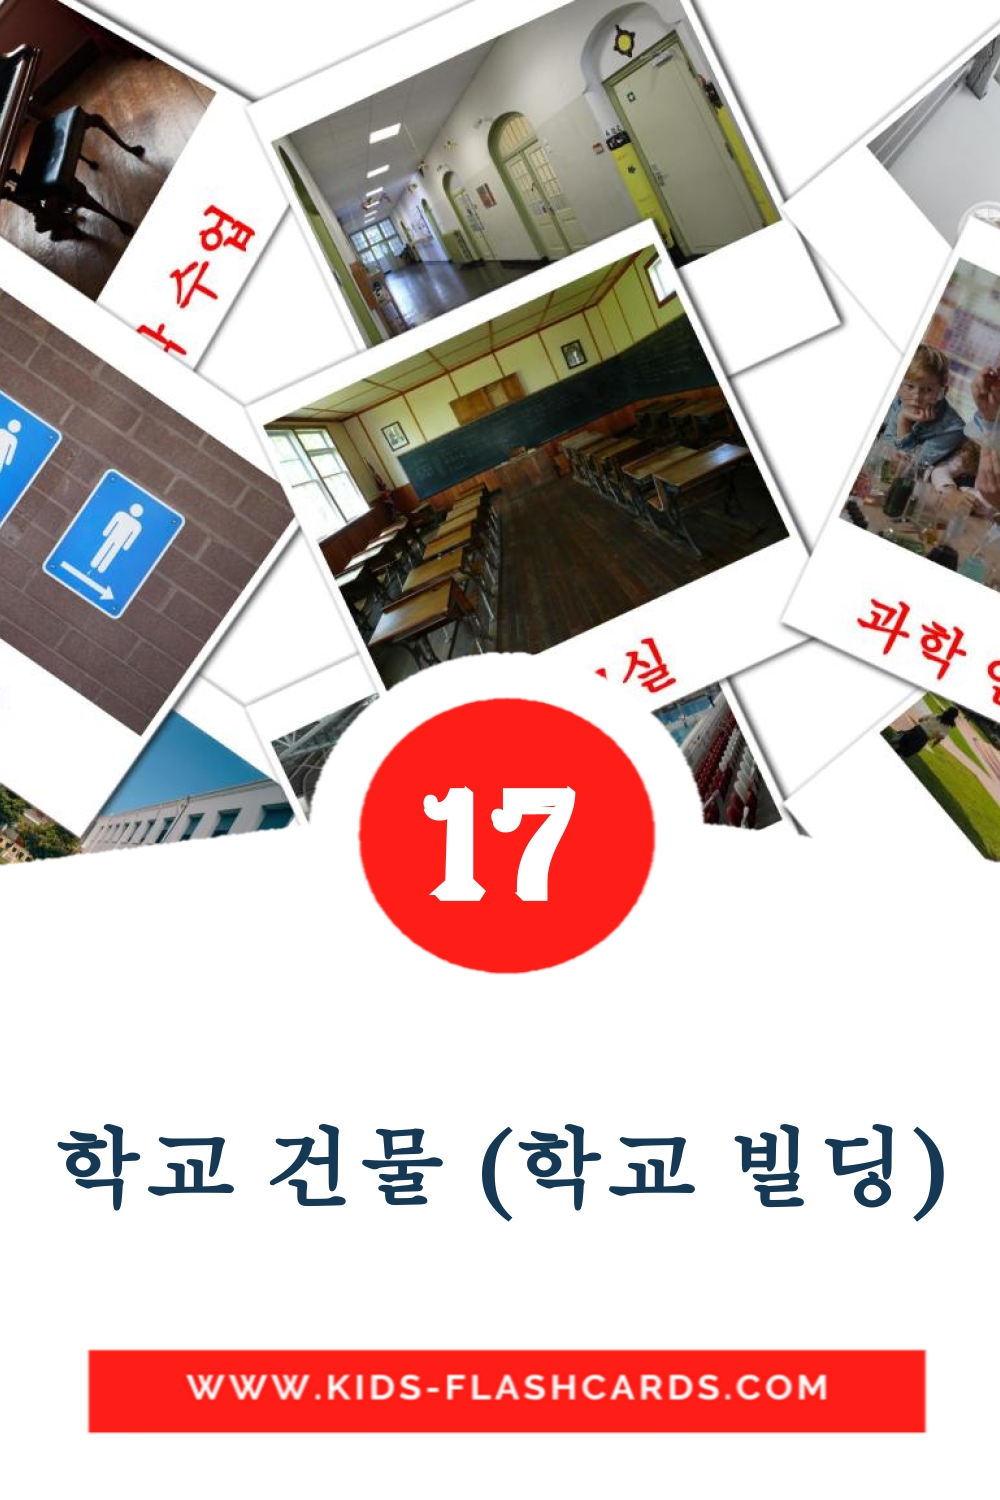 17 학교 건물 (학교 빌딩) fotokaarten voor kleuters in het koreaanse